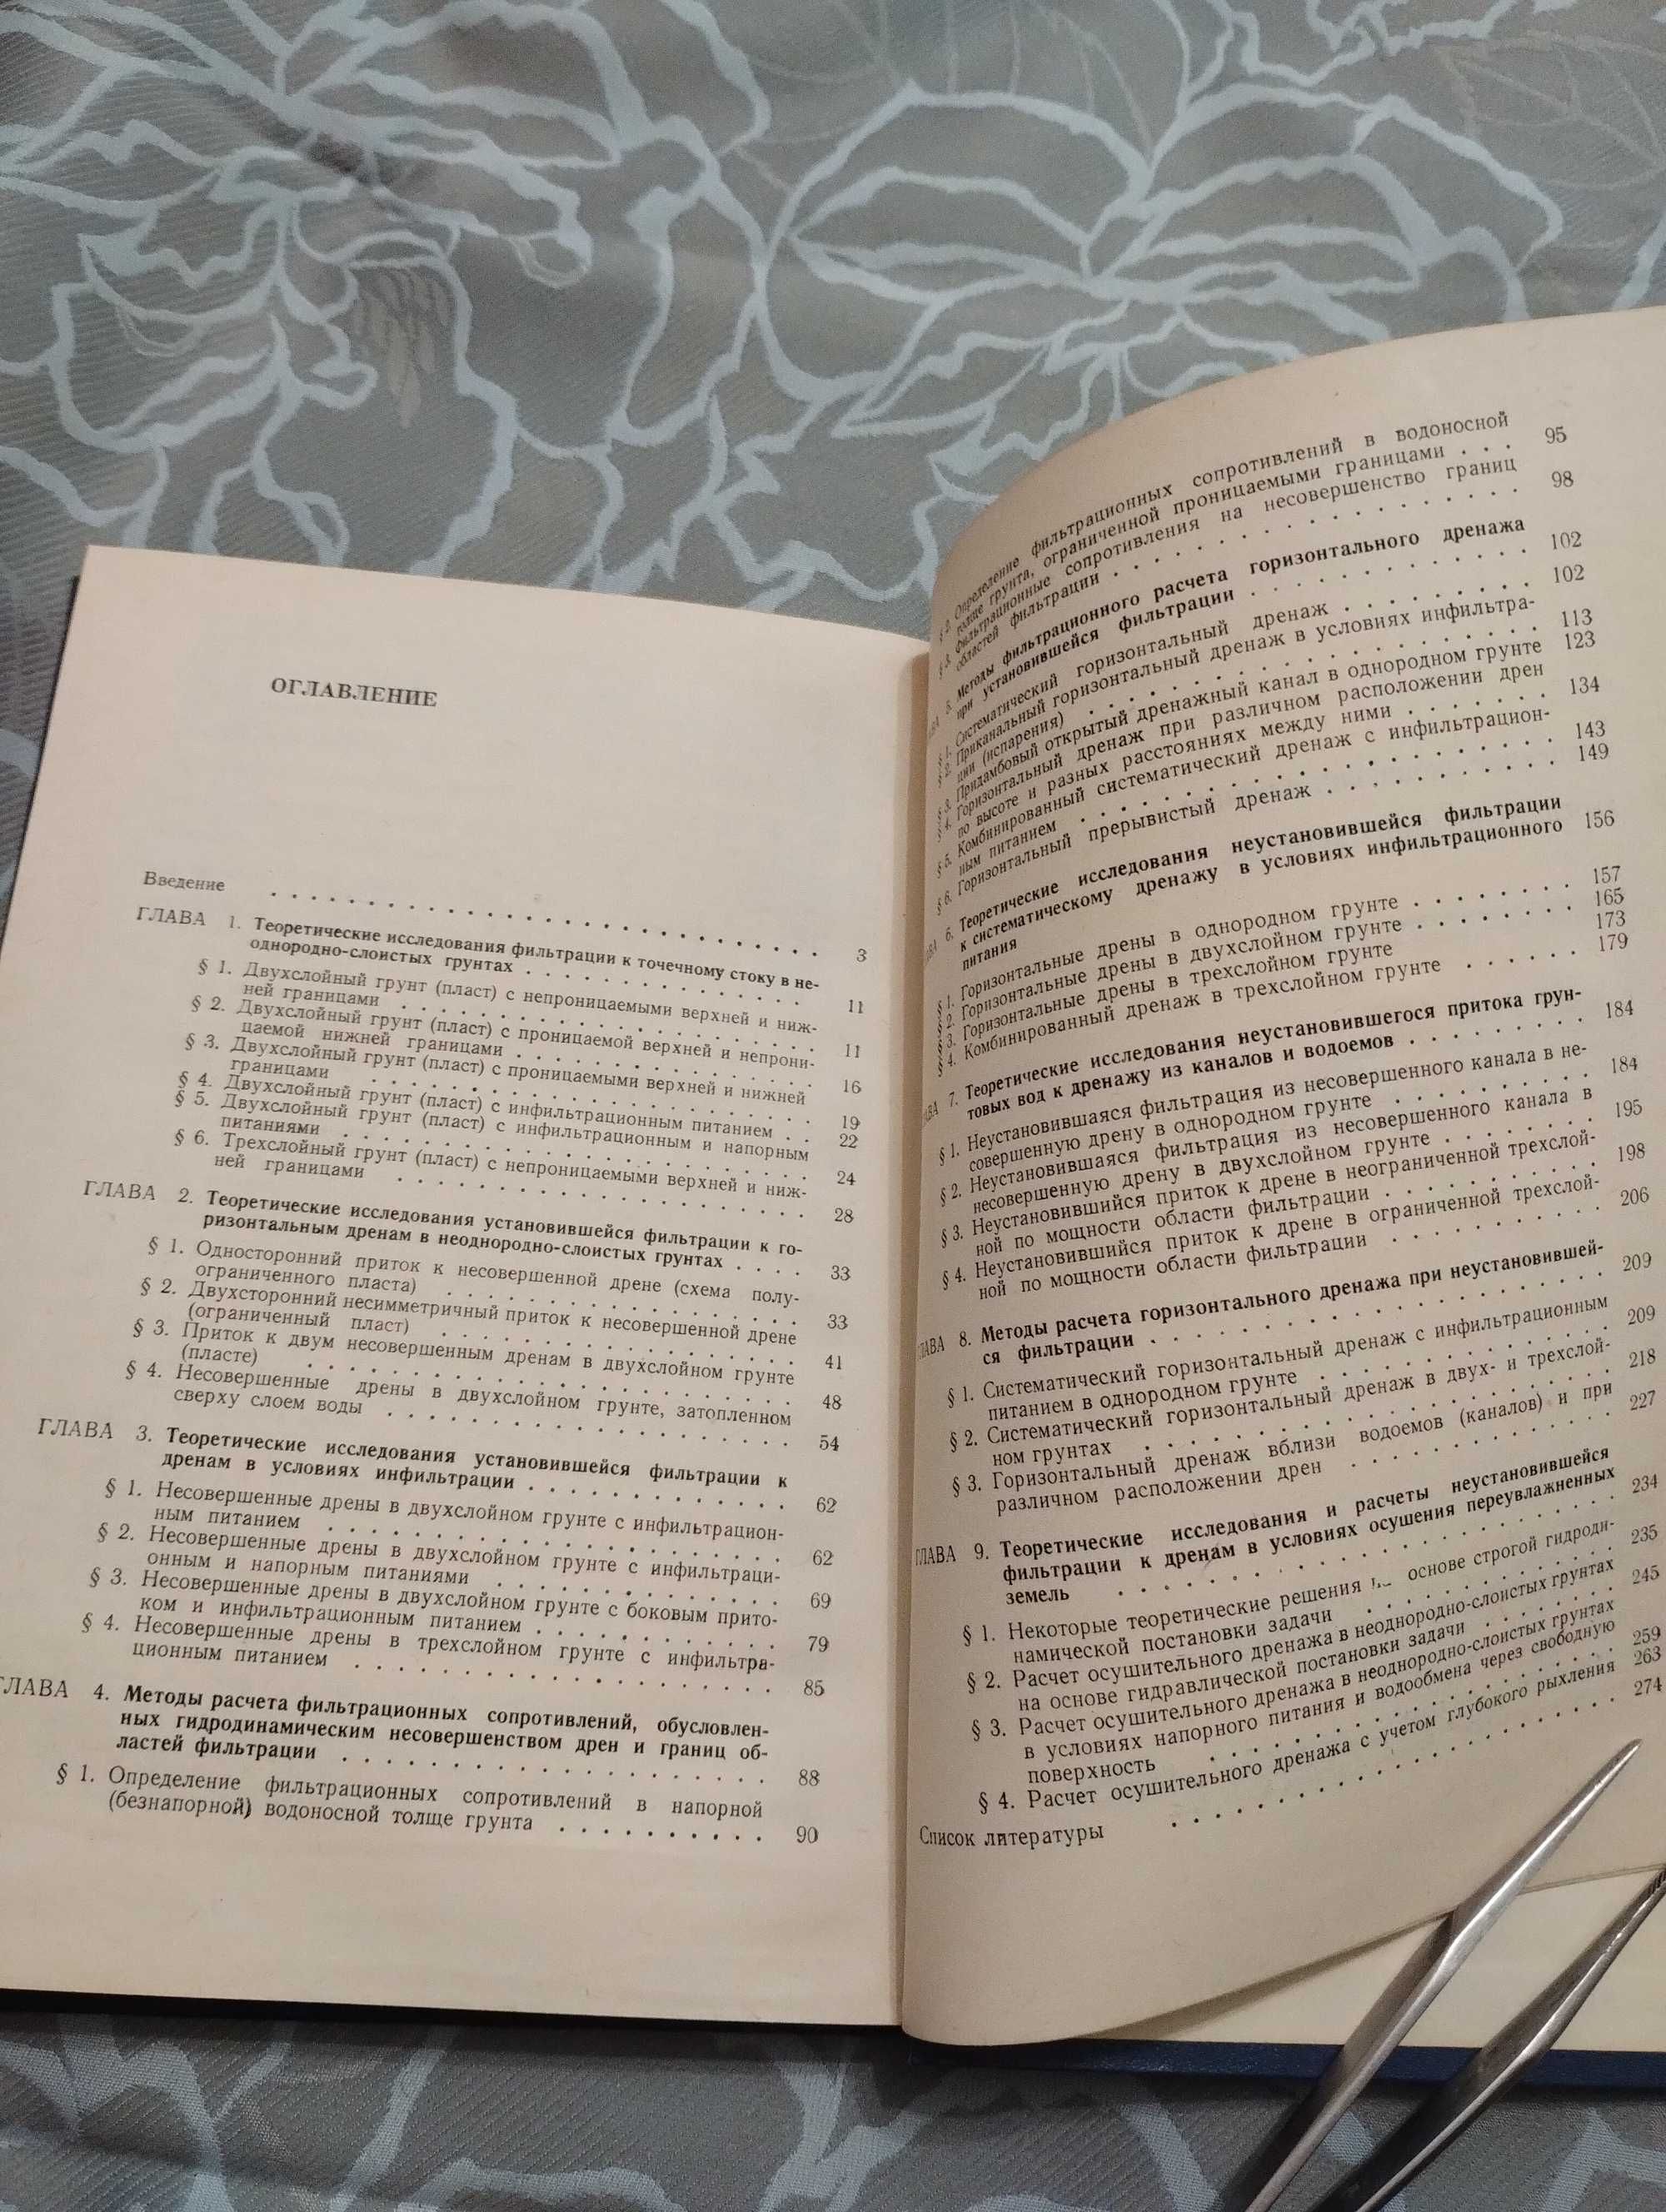 Уникальная книга с автографом "Геогидродинамика дренажа" Олейник 1981